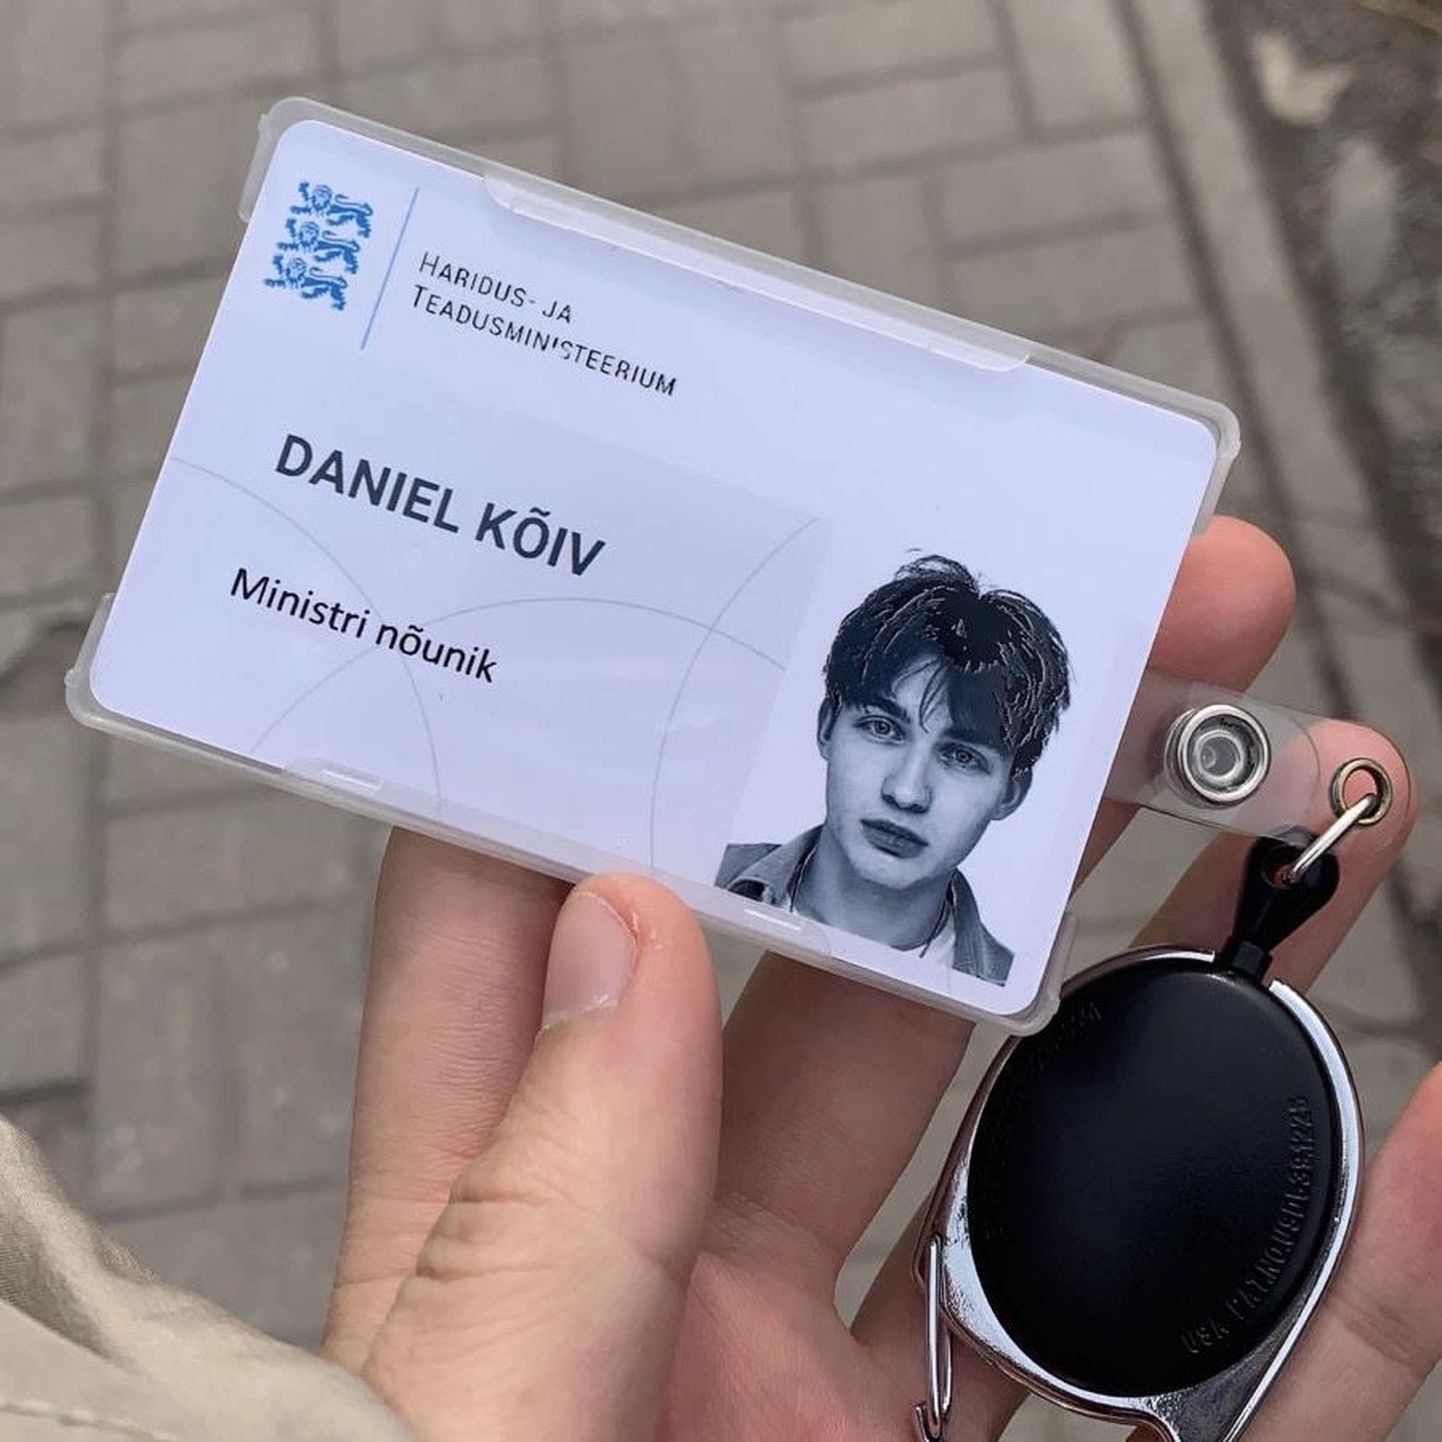 Esmaspäeval oli Daniel Kõivu esimene ametlik tööpäev ministri nõunikuna, mida kinnitab muu hulgas uus profiilipilt sotsiaalmeedias.